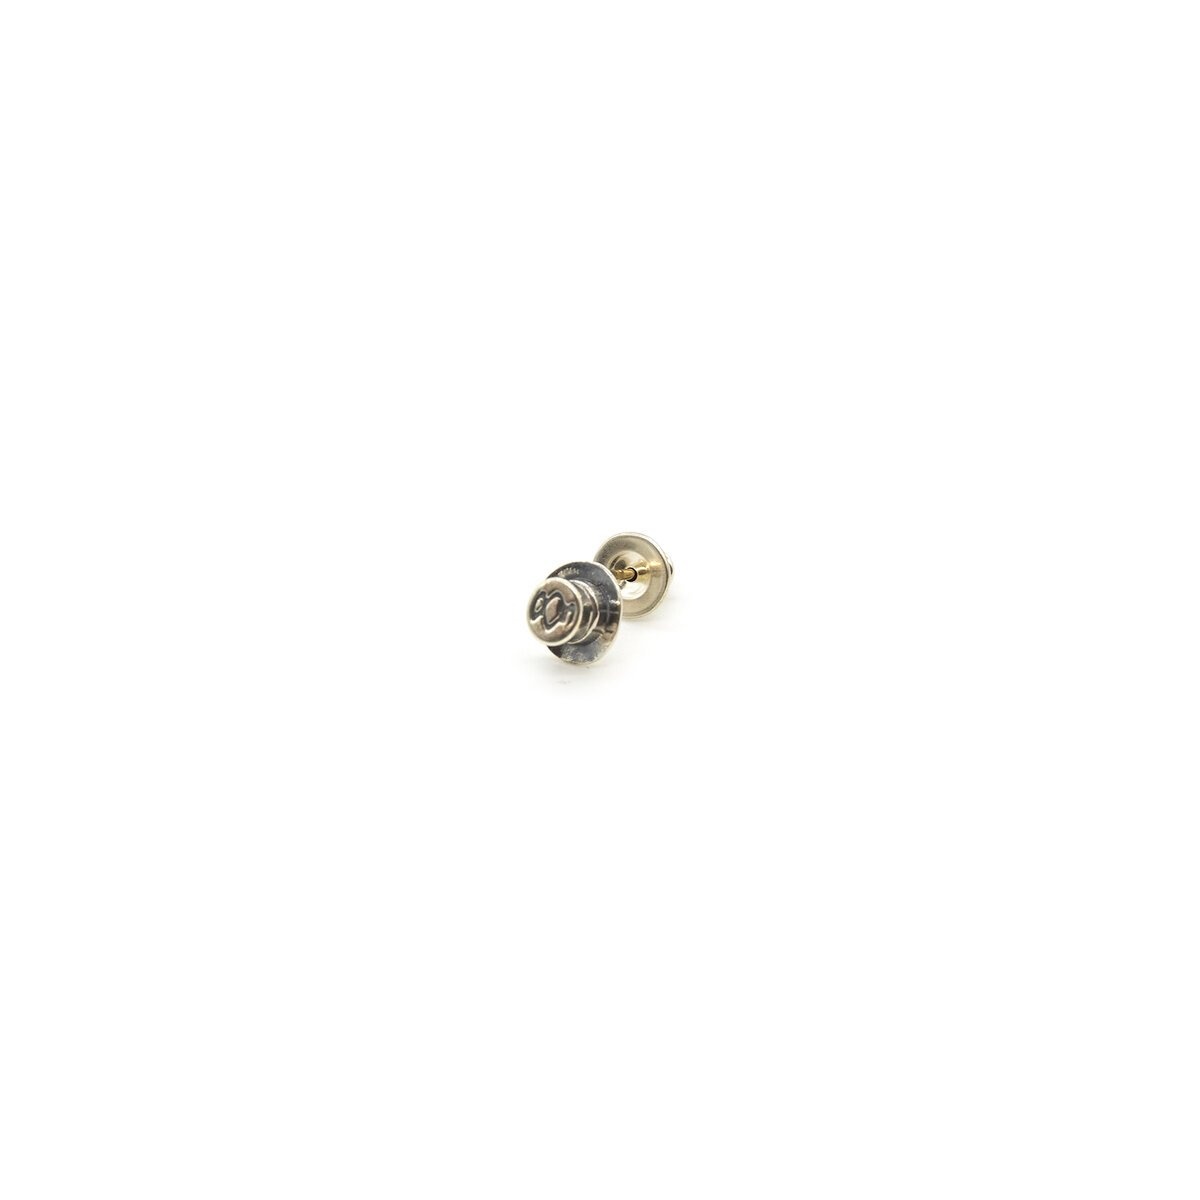 Silk Hat Pierce Stud Earring in Silver - 1